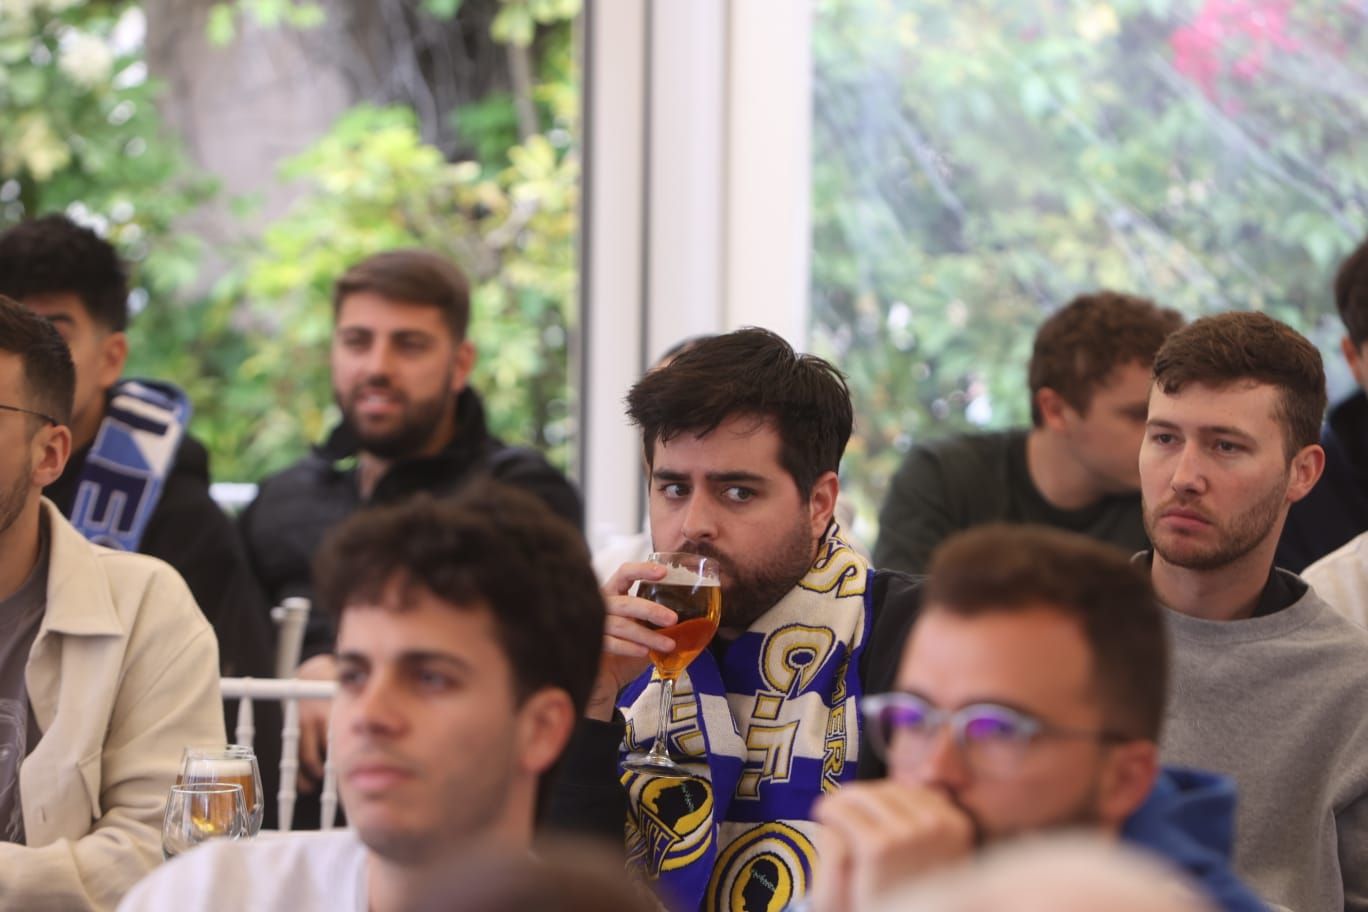 Aficionados del Hércules siguen el partido contra el Badalona Futur desde una pantalla en el restaurante El Sorell